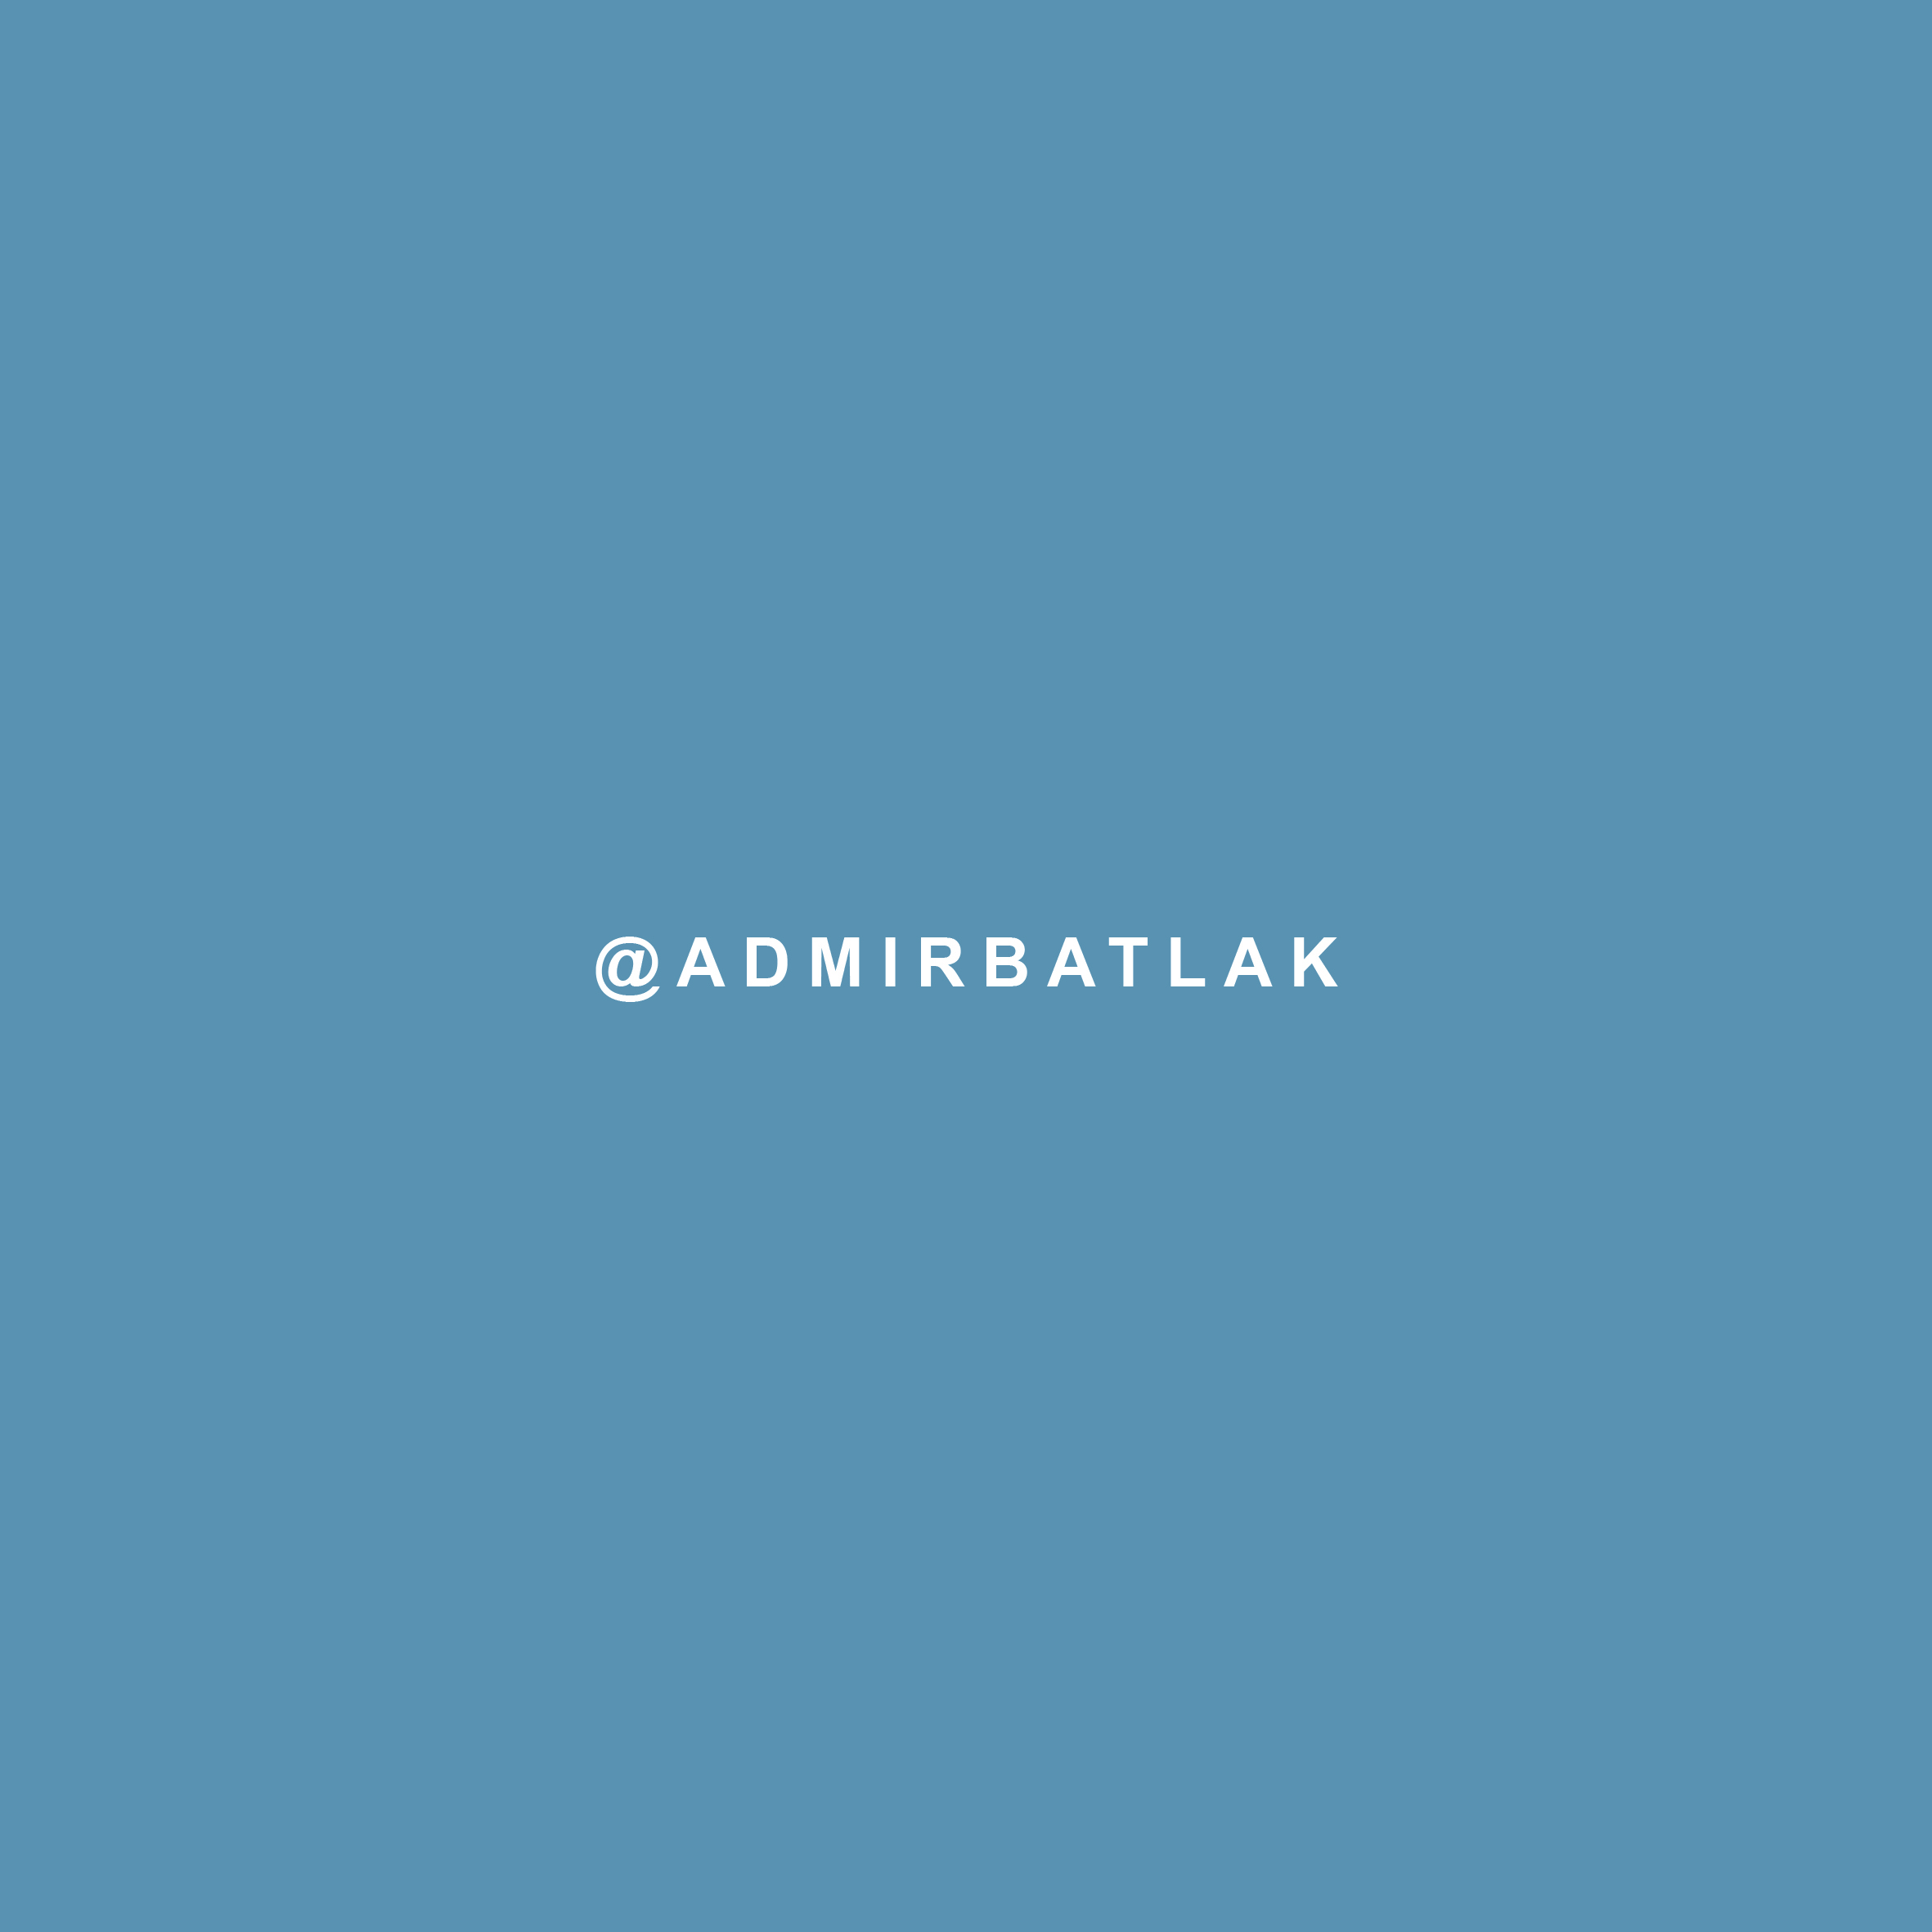 ADMIR_BATLAK1 - instagram.jpg